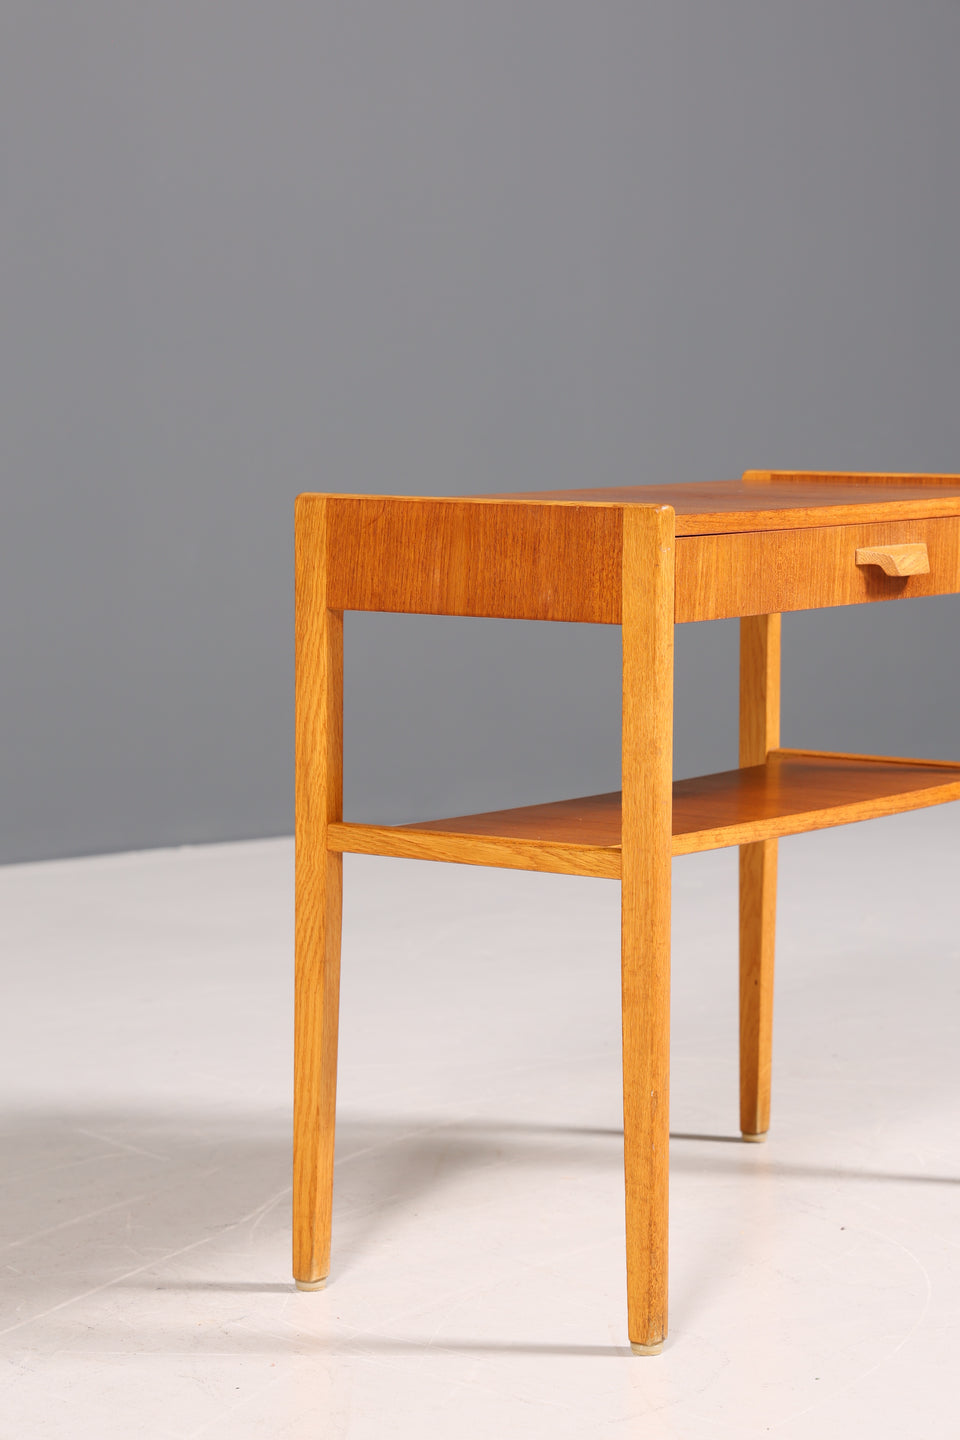 Wunderschöner Mid Century Beistelltisch Danish Design Ablagetisch Teak Tisch 60s